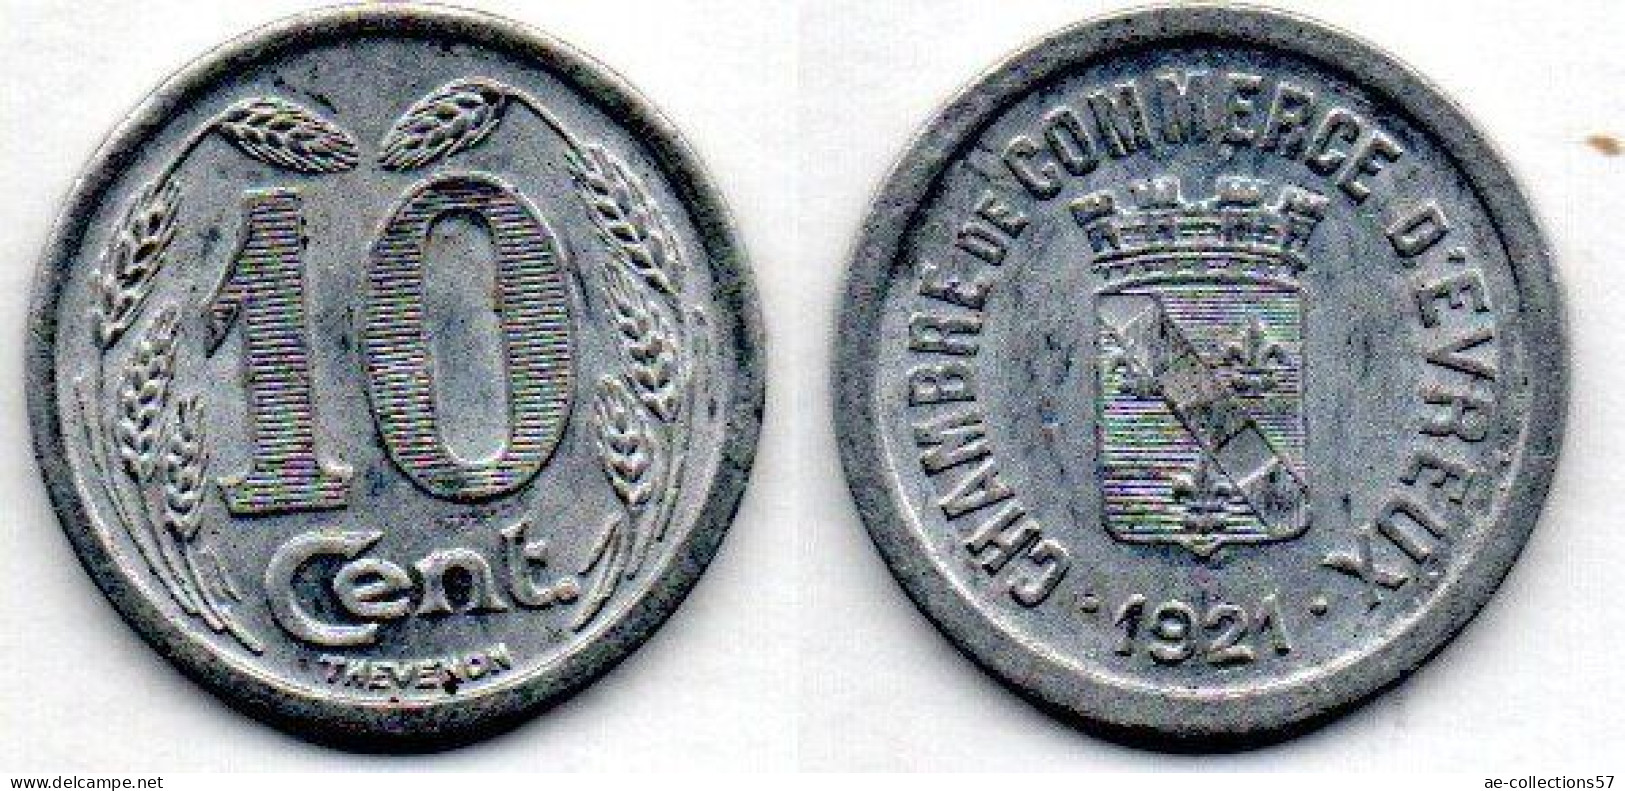 MA 22673 / Evreux 10 Centimes 1921 SUP - Monétaires / De Nécessité